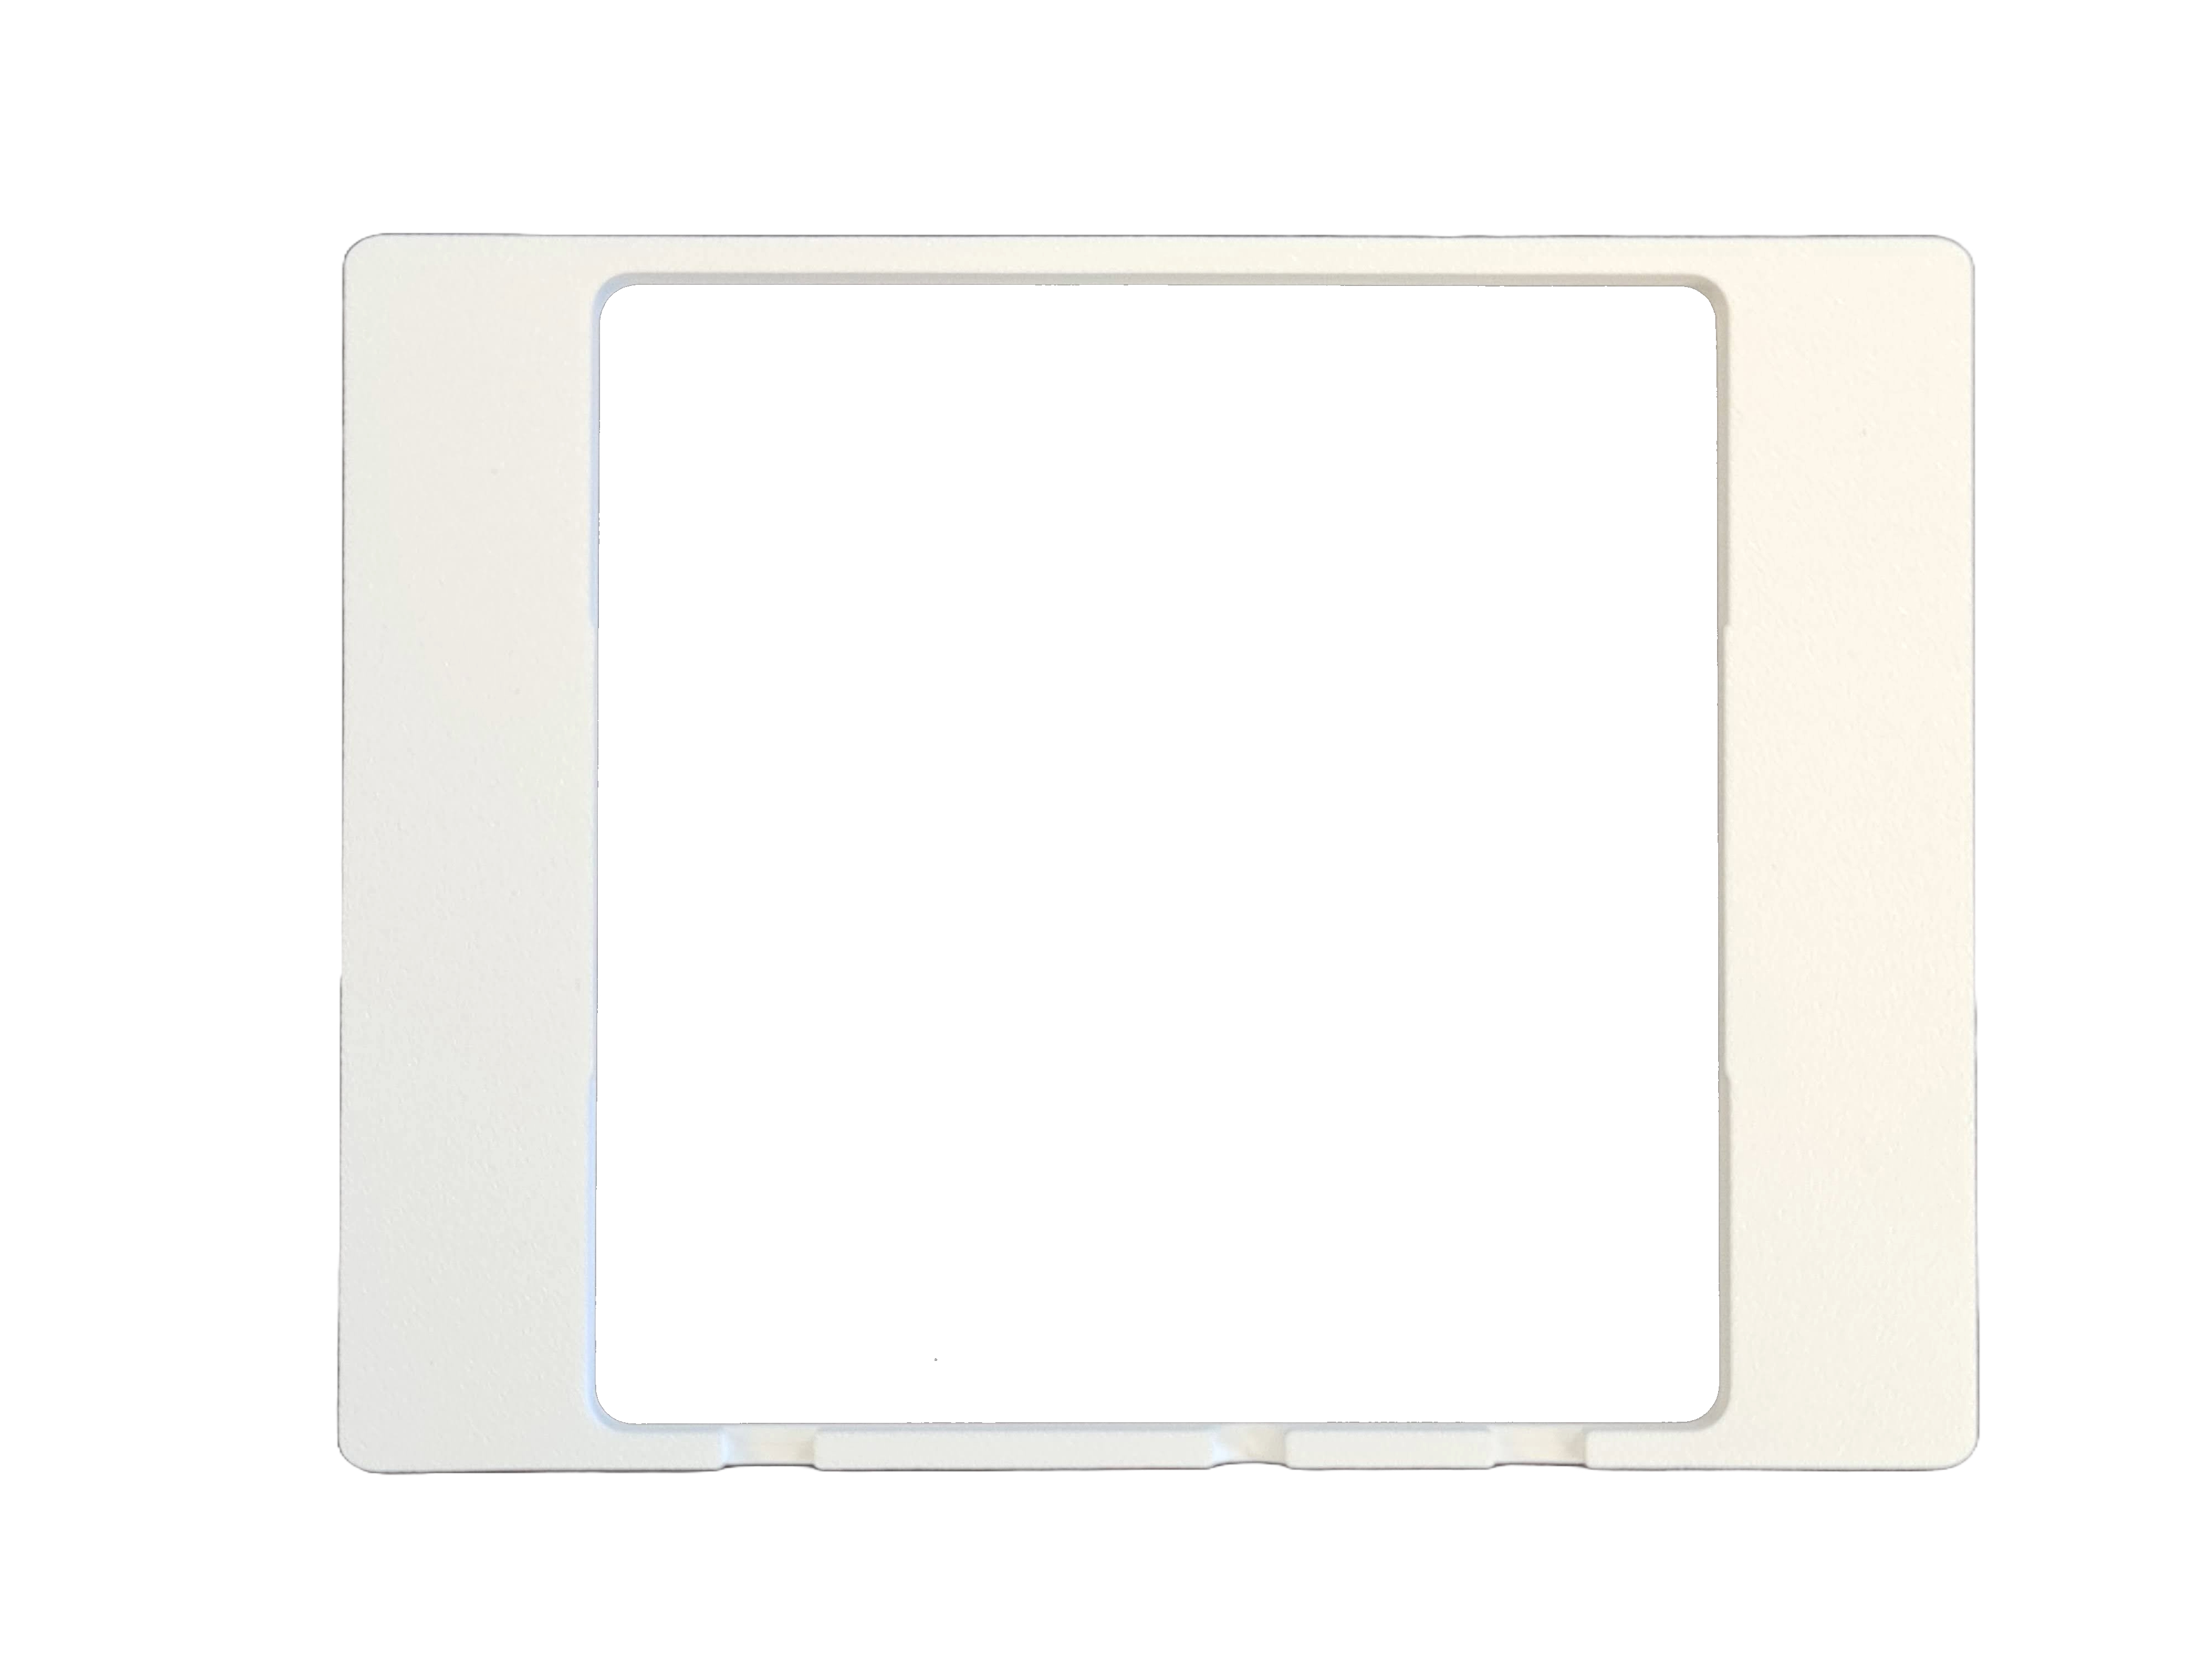 10080015 Design achterplaat voor de NXG-183x keypads, wit